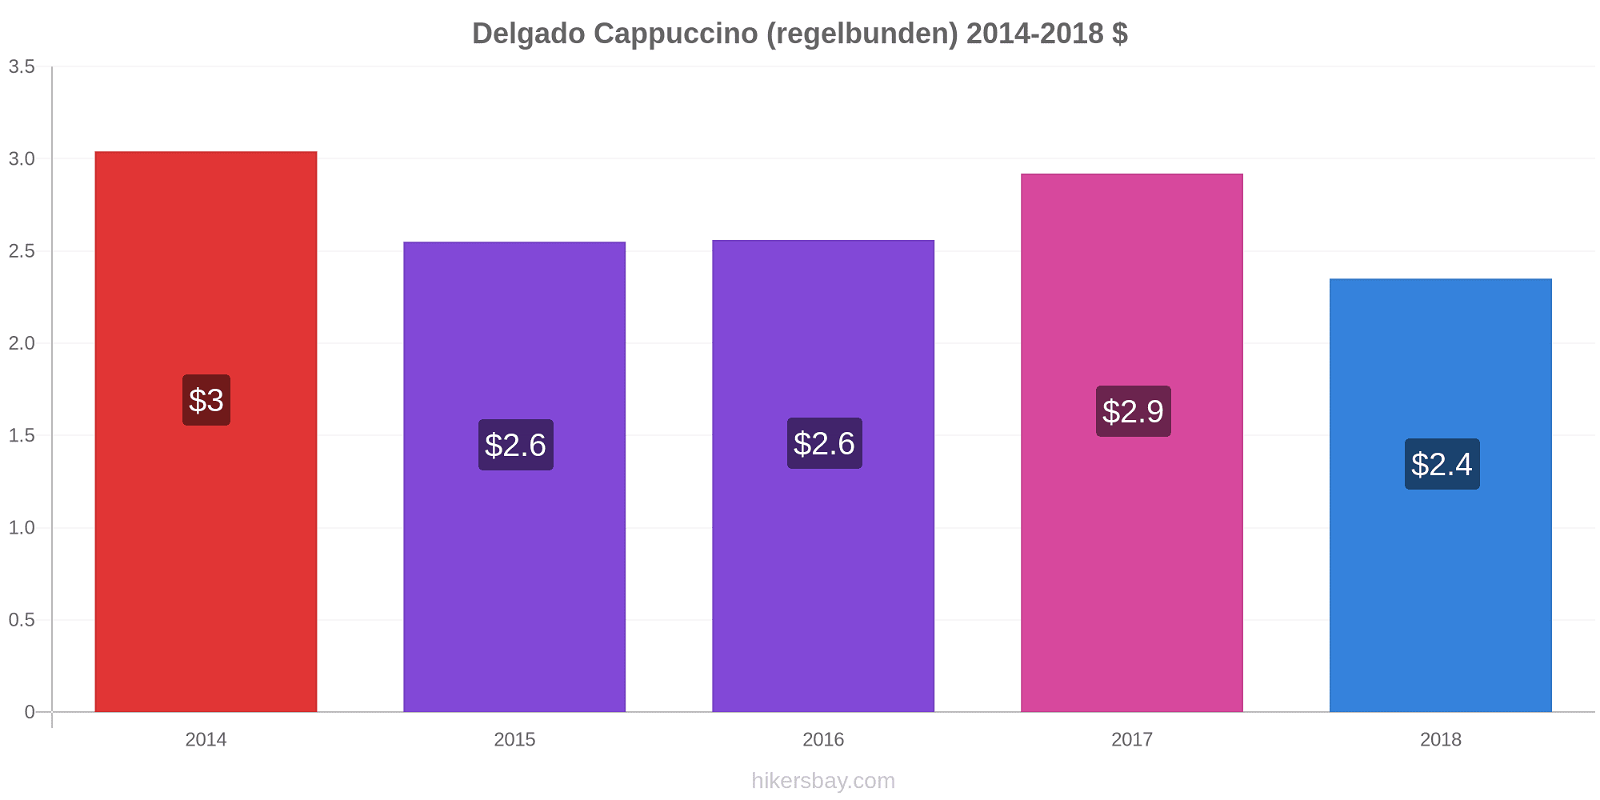 Delgado prisförändringar Cappuccino (regelbunden) hikersbay.com